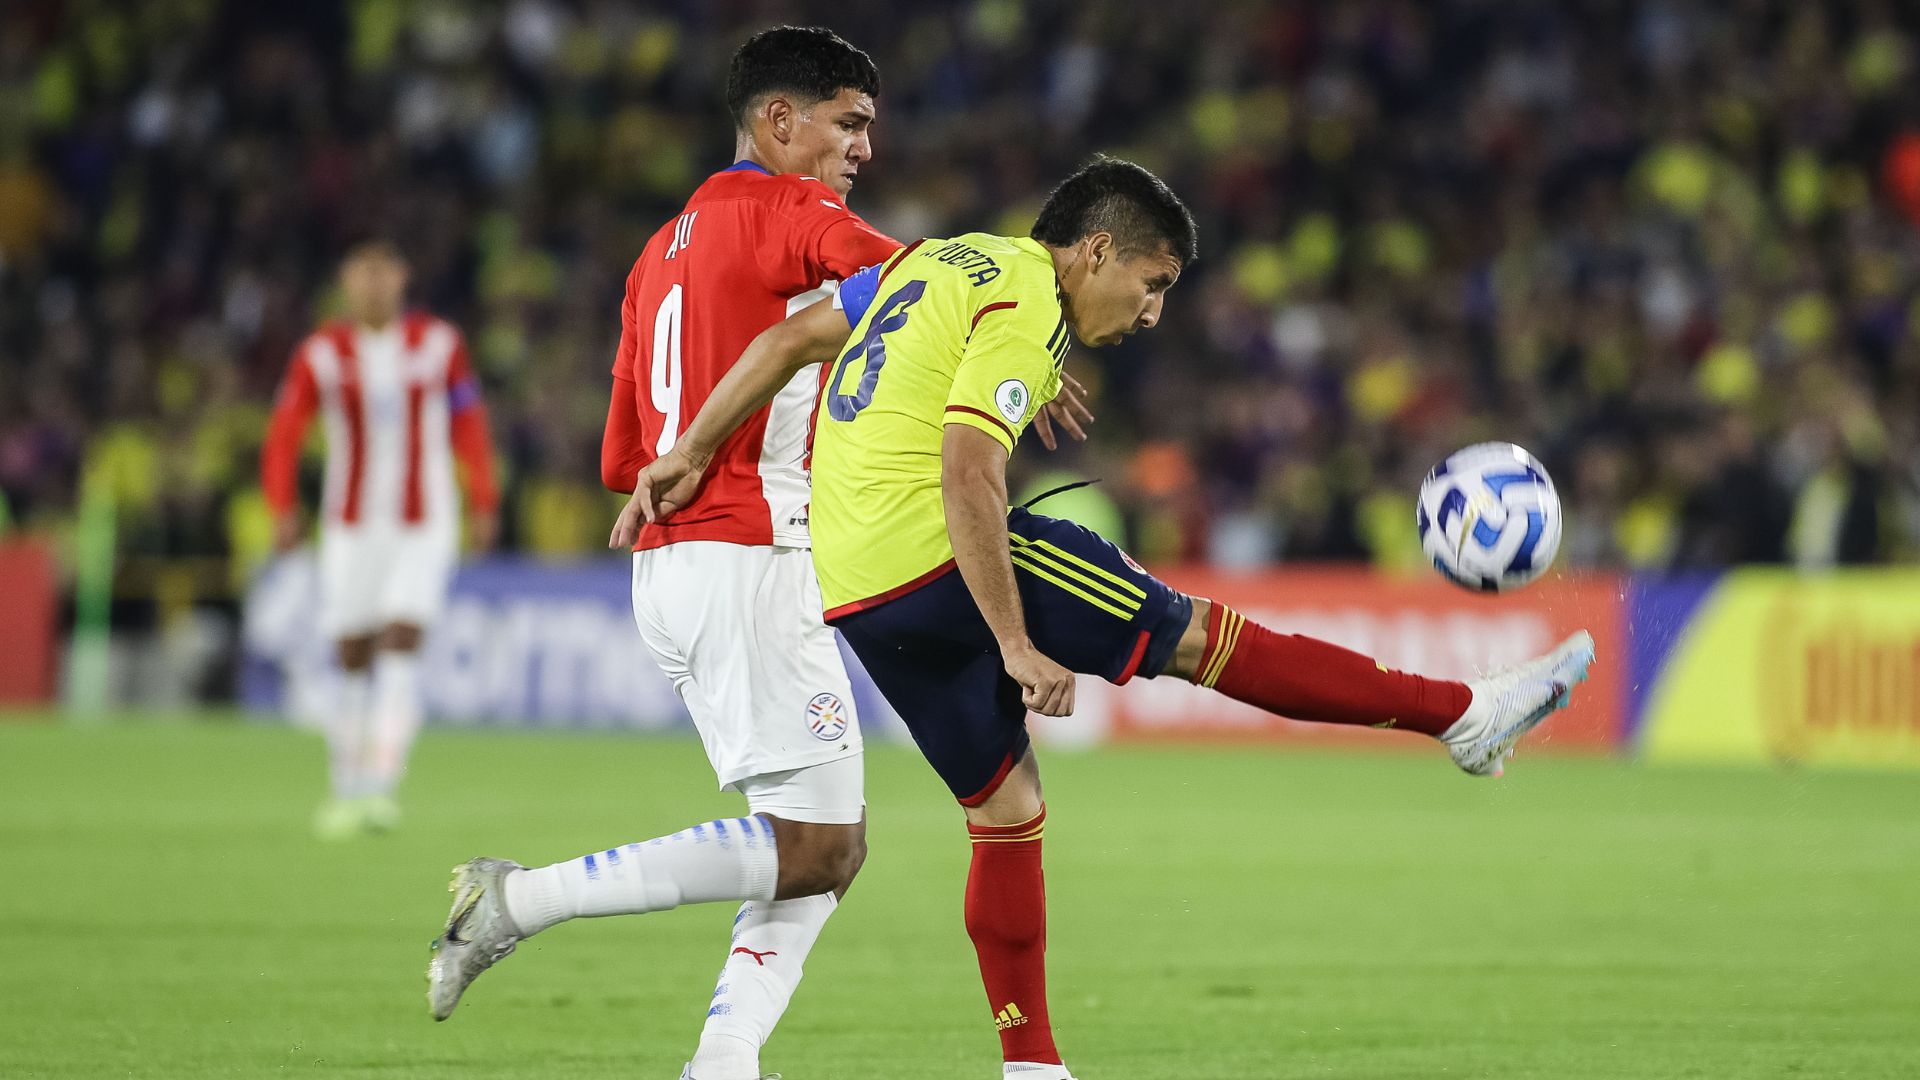 El futbolista colombiano Gustavo Puerta fue incluido en una lista de “jugadores prodigios” por un reconocido medio inglés